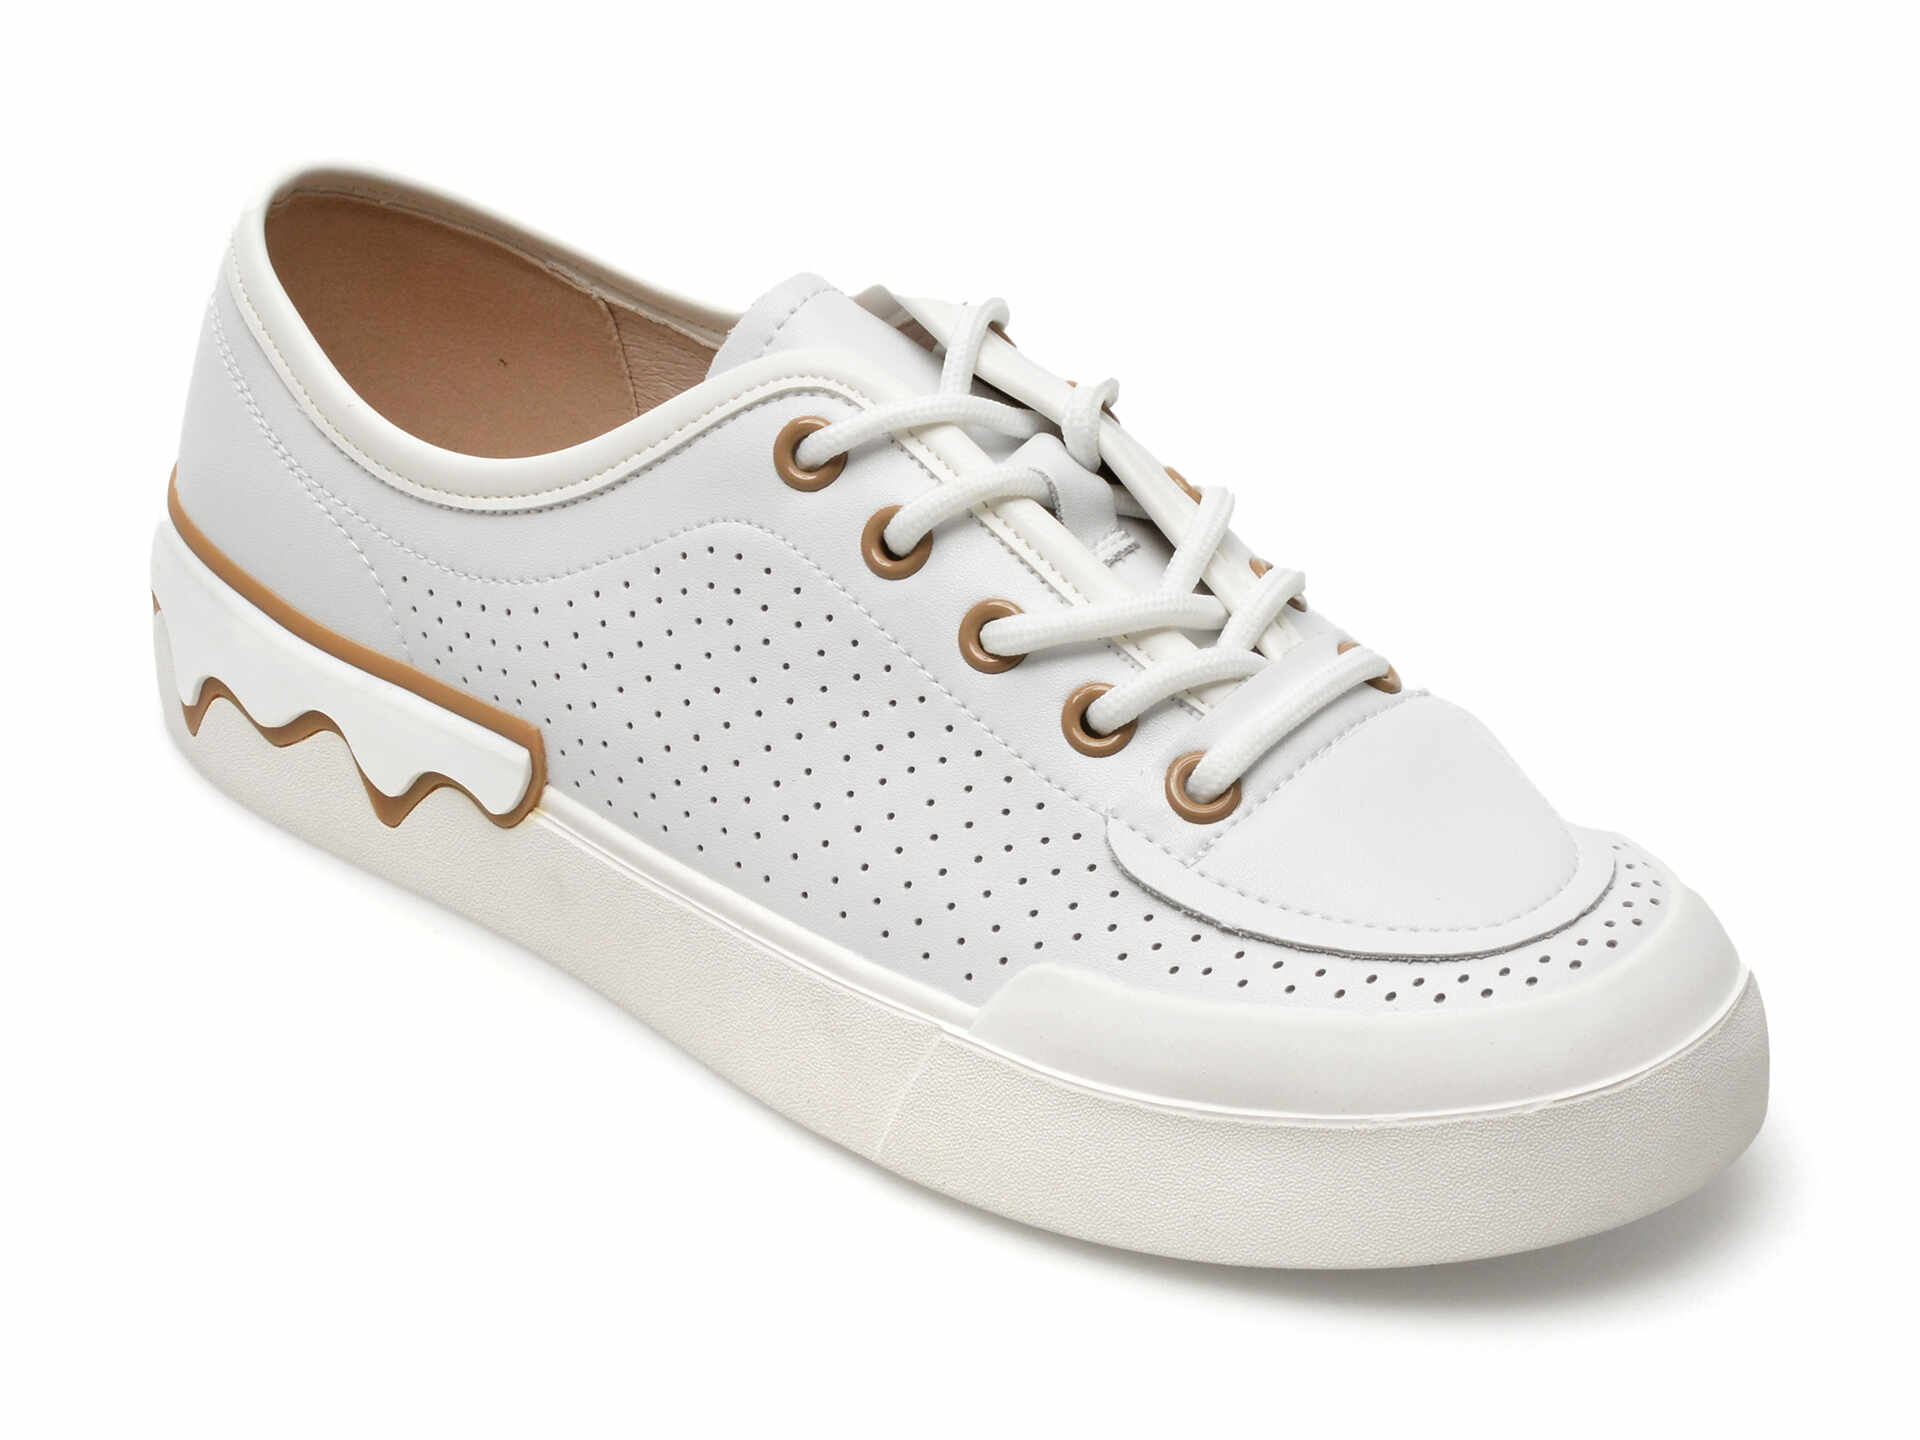 Pantofi GRYXX albi, KD562, din piele naturala